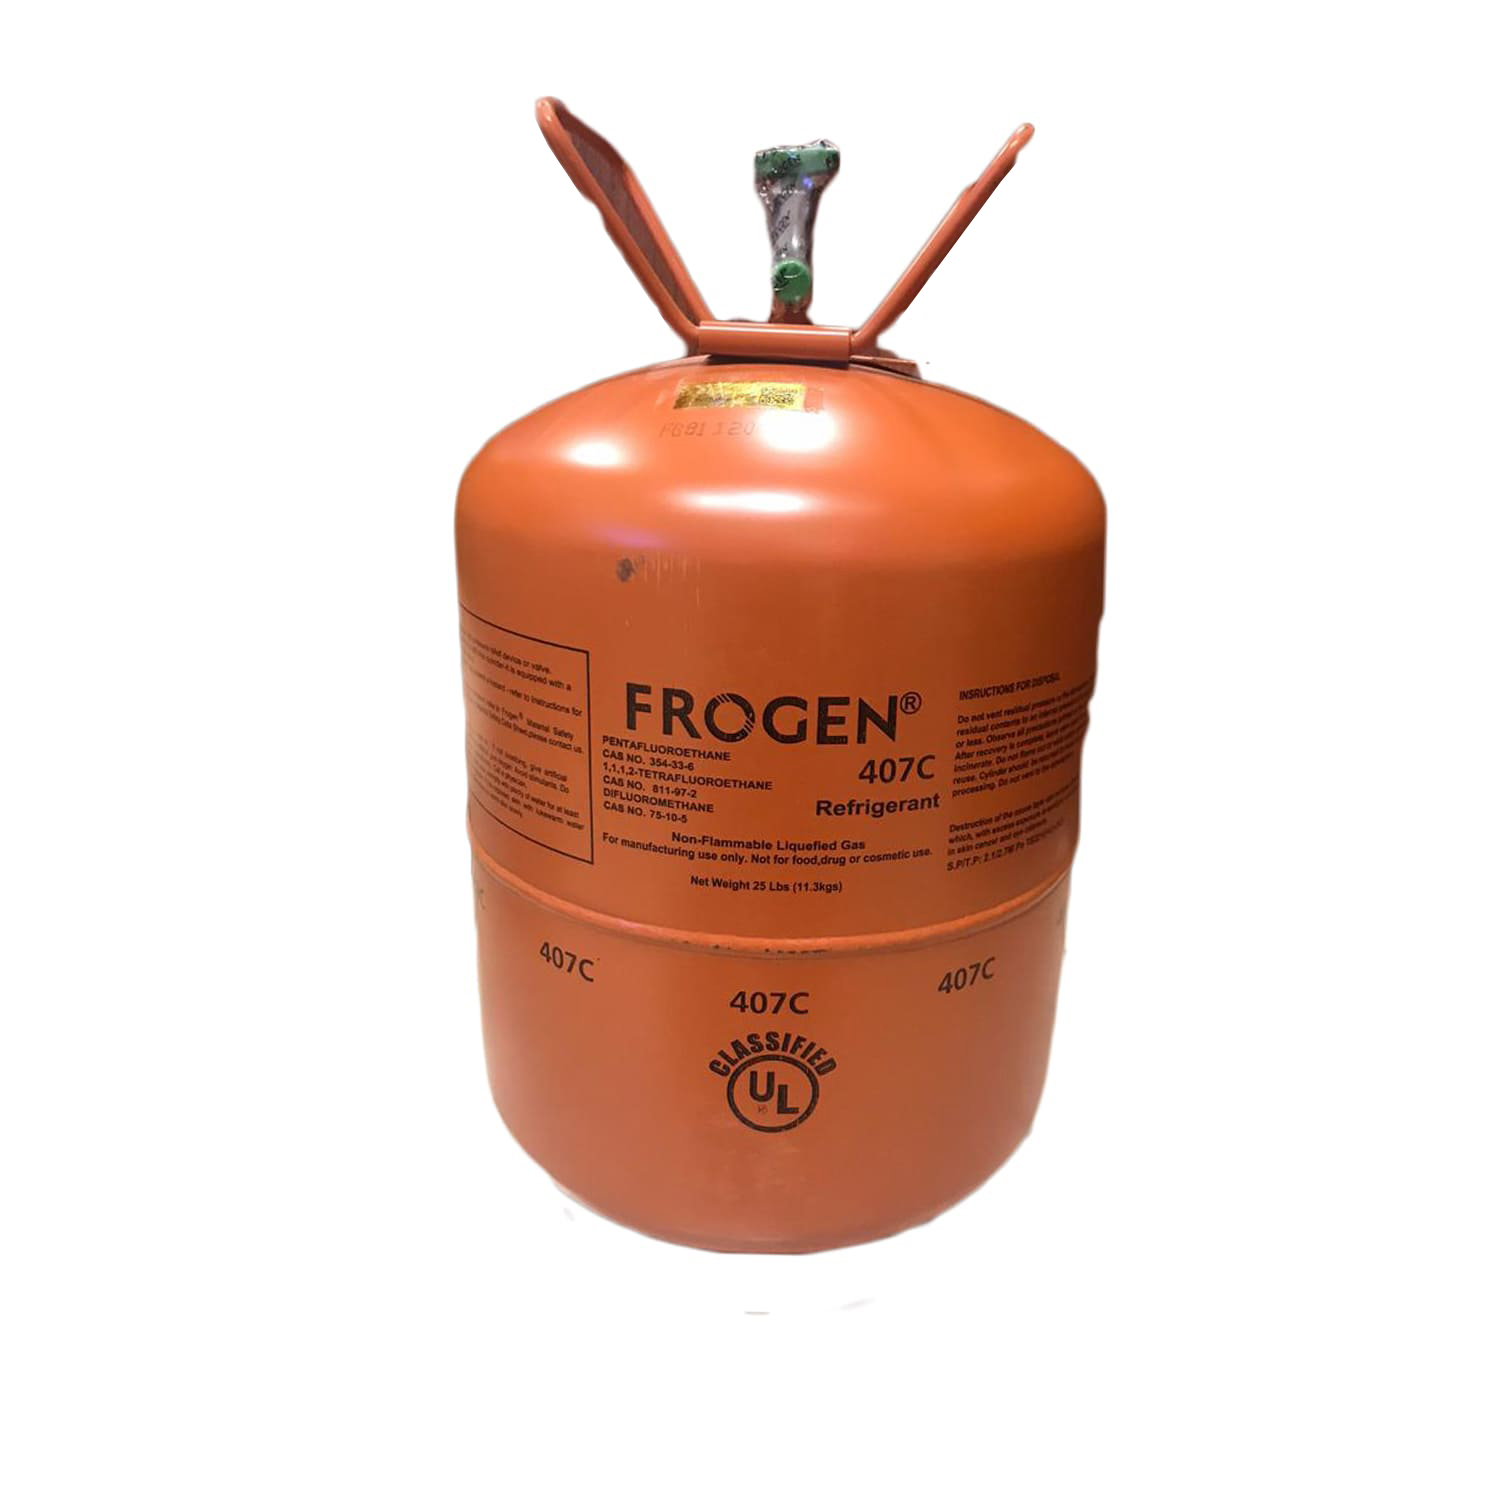 گاز مبرد R407C فروژن (Frogen)